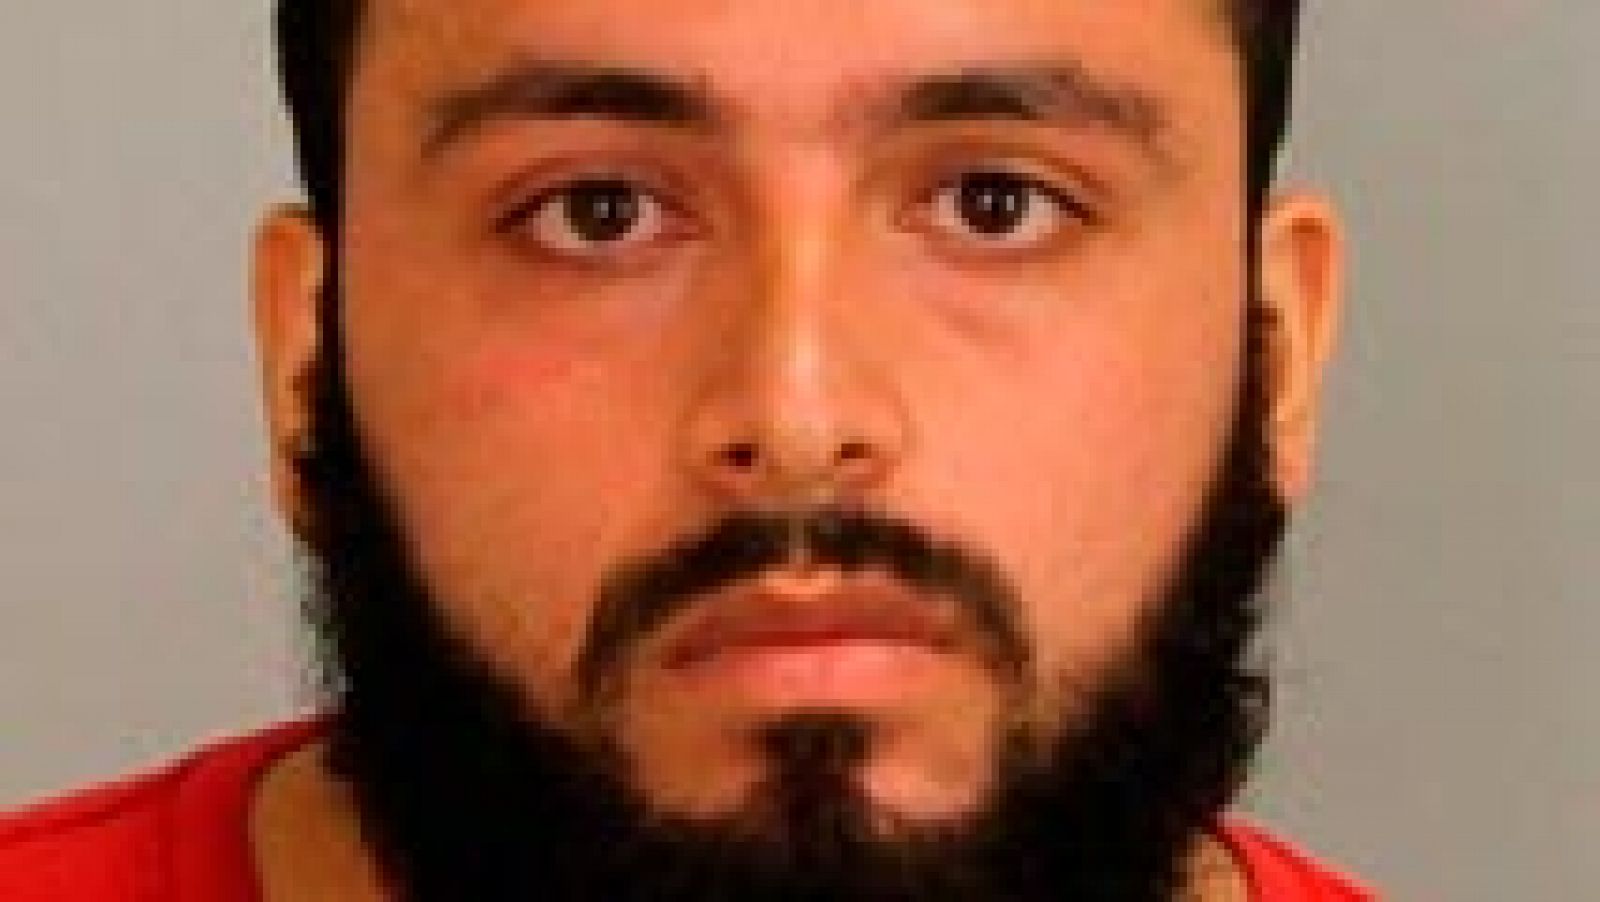 Alerta terrorista en EE.UU. - El padre de Rahami advirtió en 2014 al FBI que su hijo era terrorista